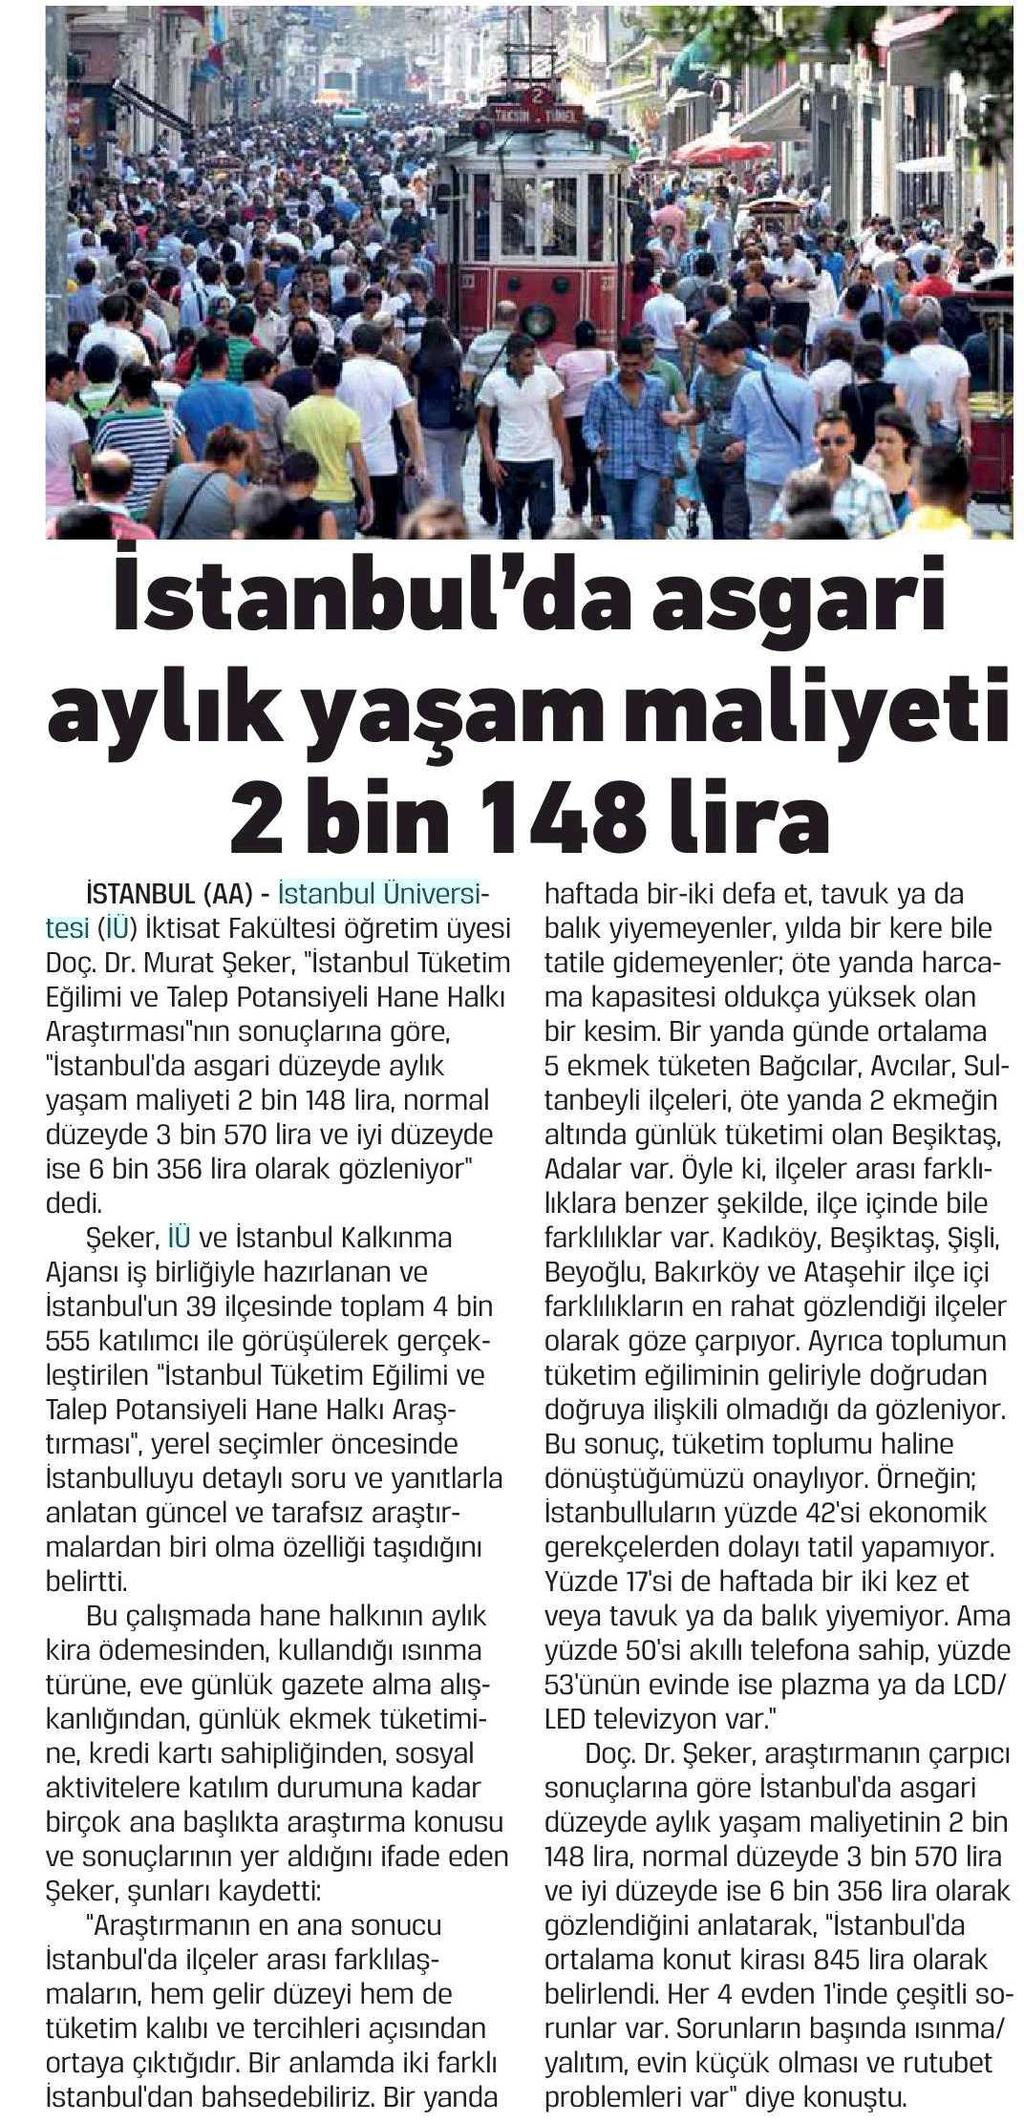 ISTANBUL'DA ASGARI AYLIK YASAM MALIYETI 2 BIN 148 LIRA Yayın Adı :